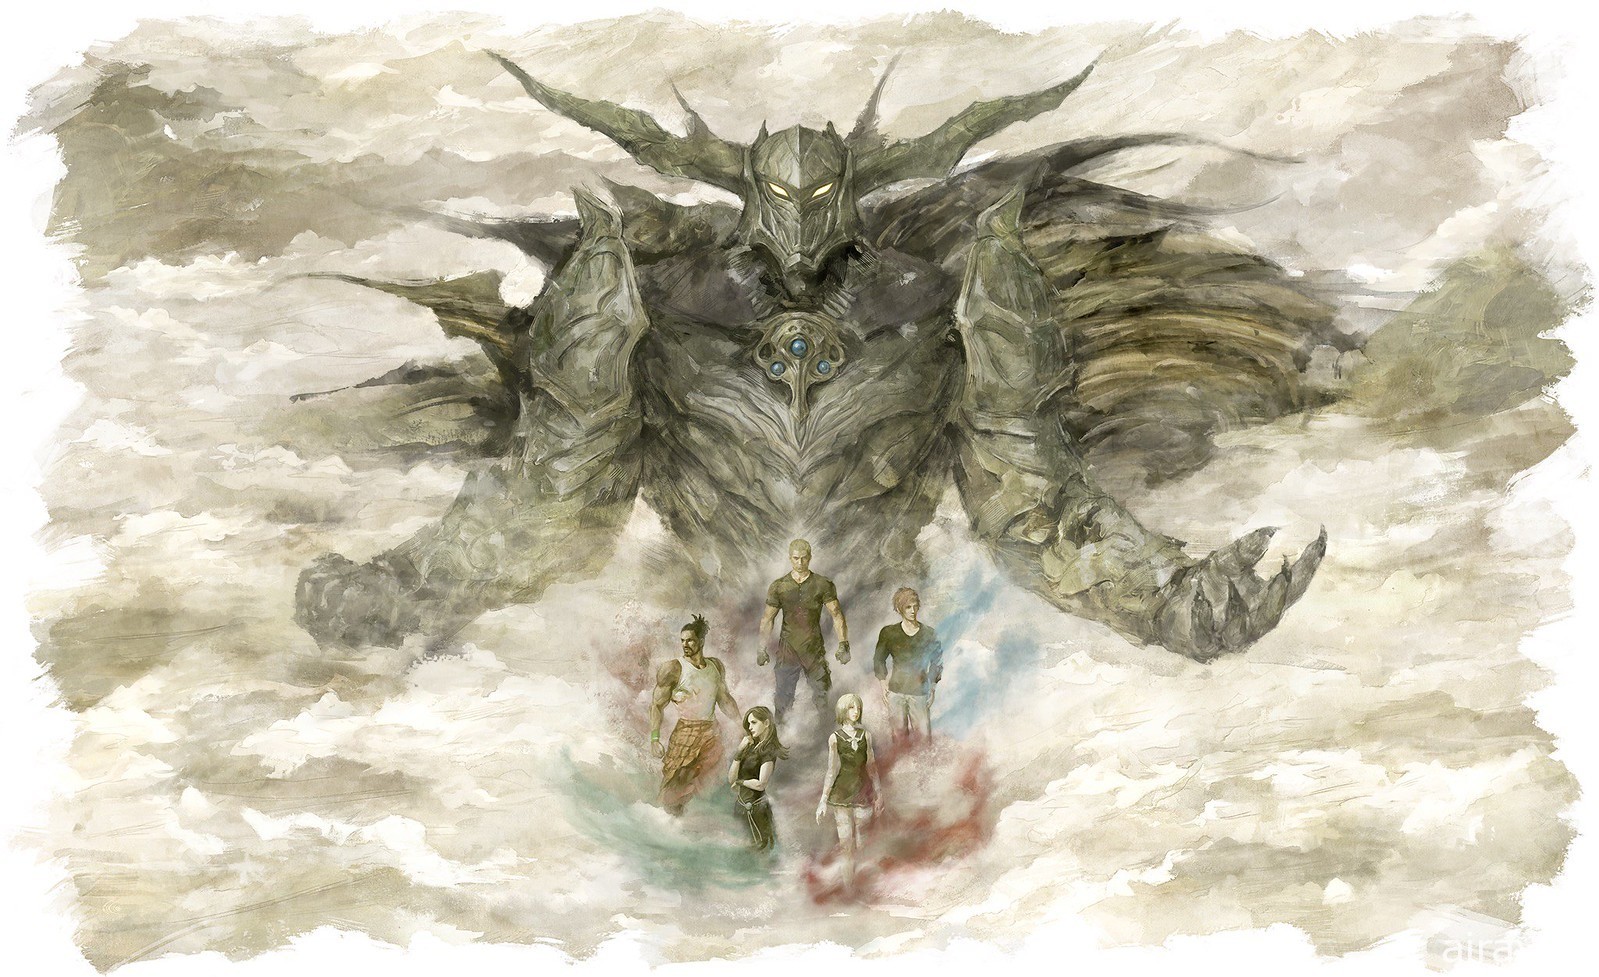 《樂園的異鄉人 Final Fantasy 起源》核心團隊分享對《Final Fantasy》的追本溯源